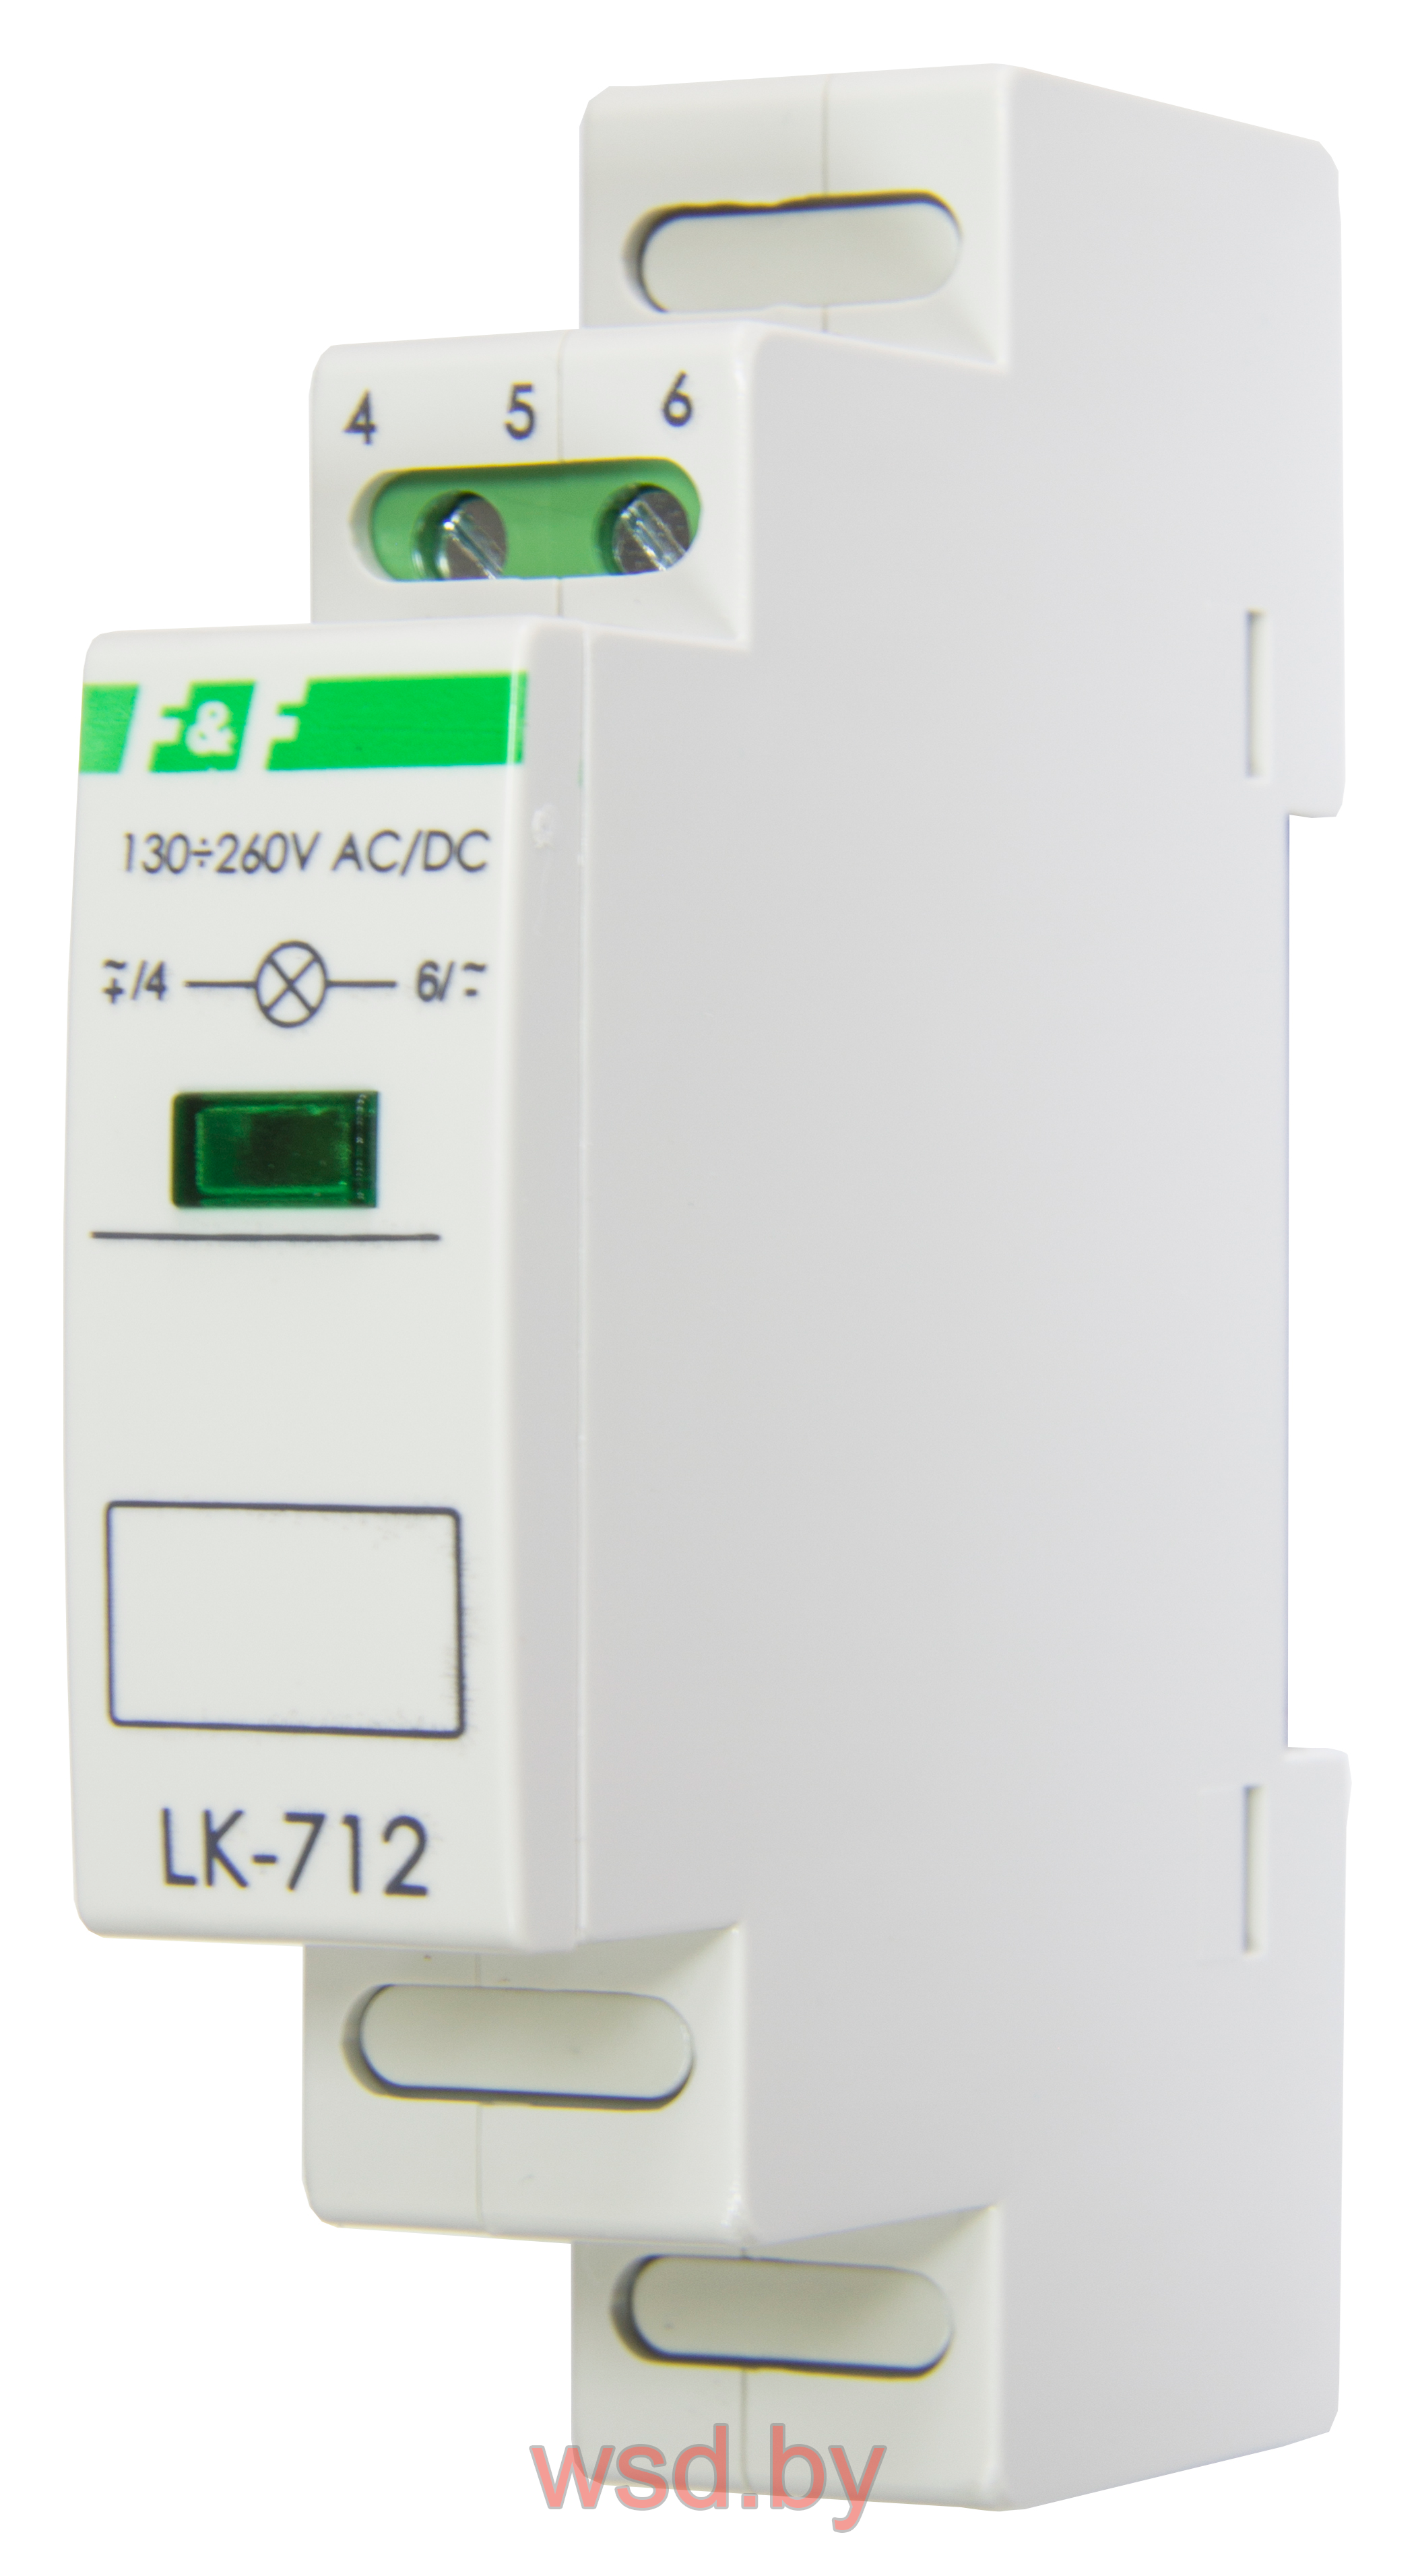 Указатель напряжения LK-712-Y-3 сигнализация наличия одной фазы, цвет ЖЁЛТЫЙ,  1 модуль, монтаж на DIN-рейке 30-130 В AC/DC IP20